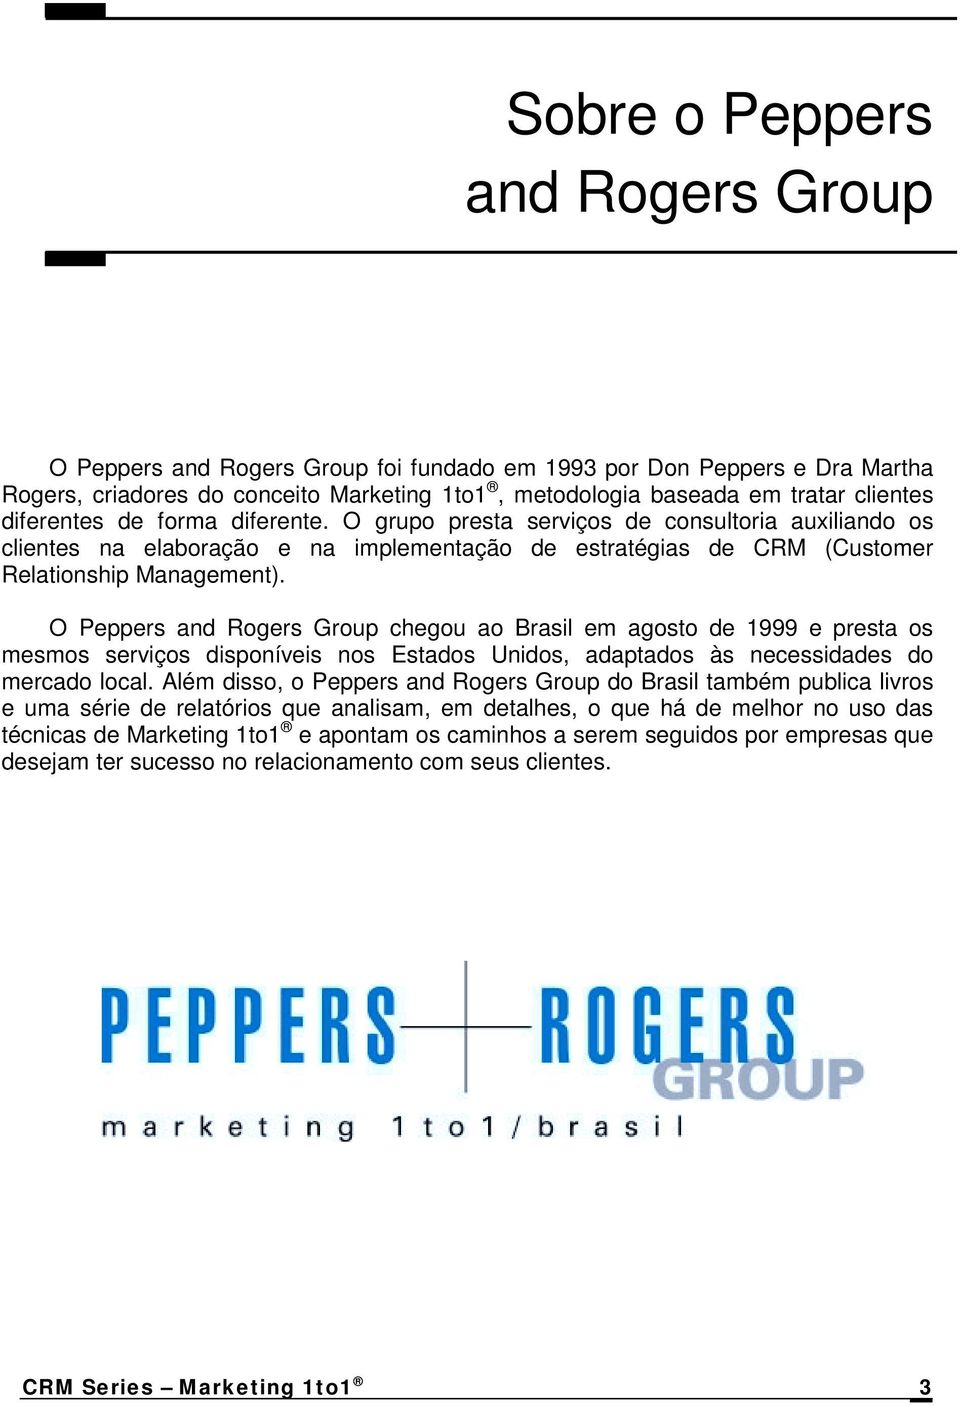 O Peppers and Rogers Group chegou ao Brasil em agosto de 1999 e presta os mesmos serviços disponíveis nos Estados Unidos, adaptados às necessidades do mercado local.